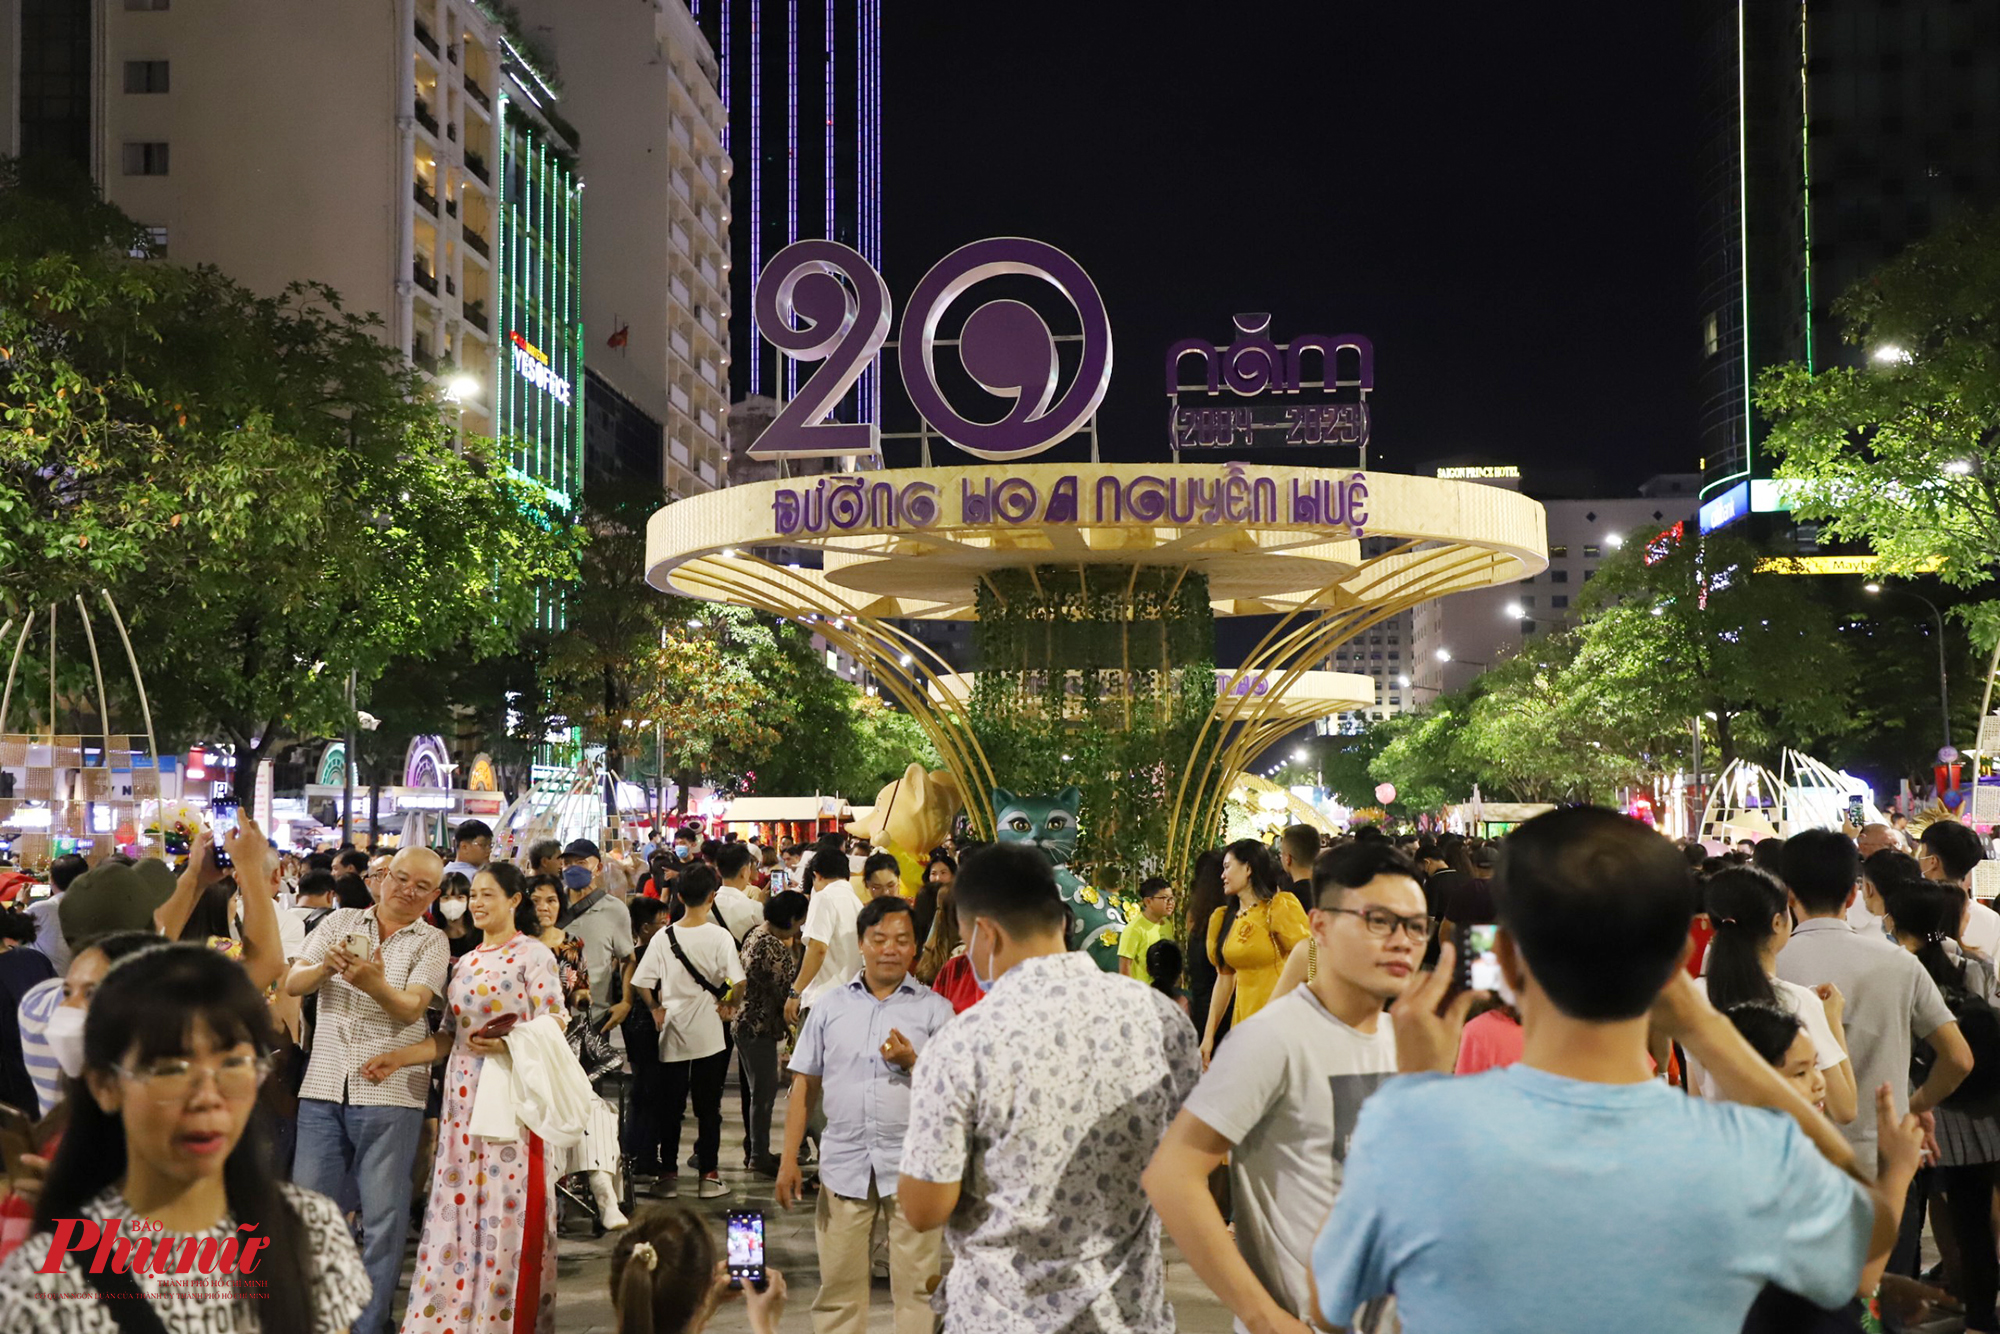 Theo ghi nhận, từ 19h, phố đi bộ Nguyễn Huệ trở nên đông đúc, nhộn nhịp. Người dân tranh thủ vui chơi, chụp hình trước các tiểu cảnh trên đường hoa